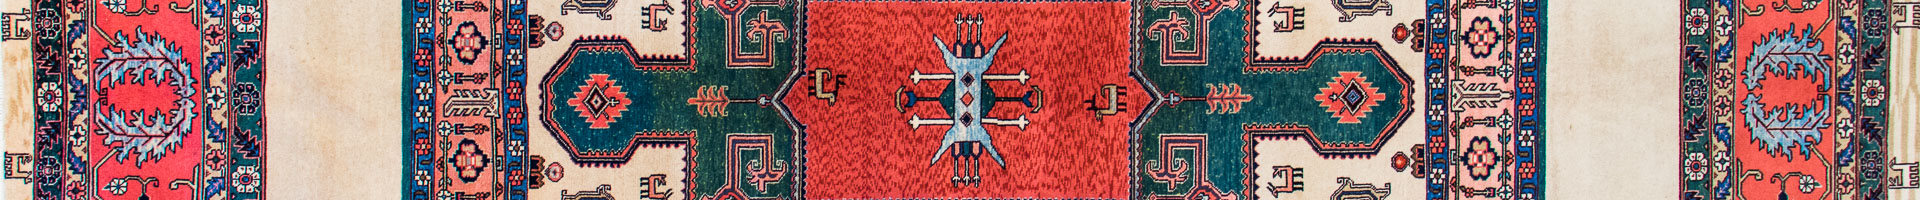 Ardabil Persian Carpet Rug N1Carpet Montreal Canada Tapis Persan